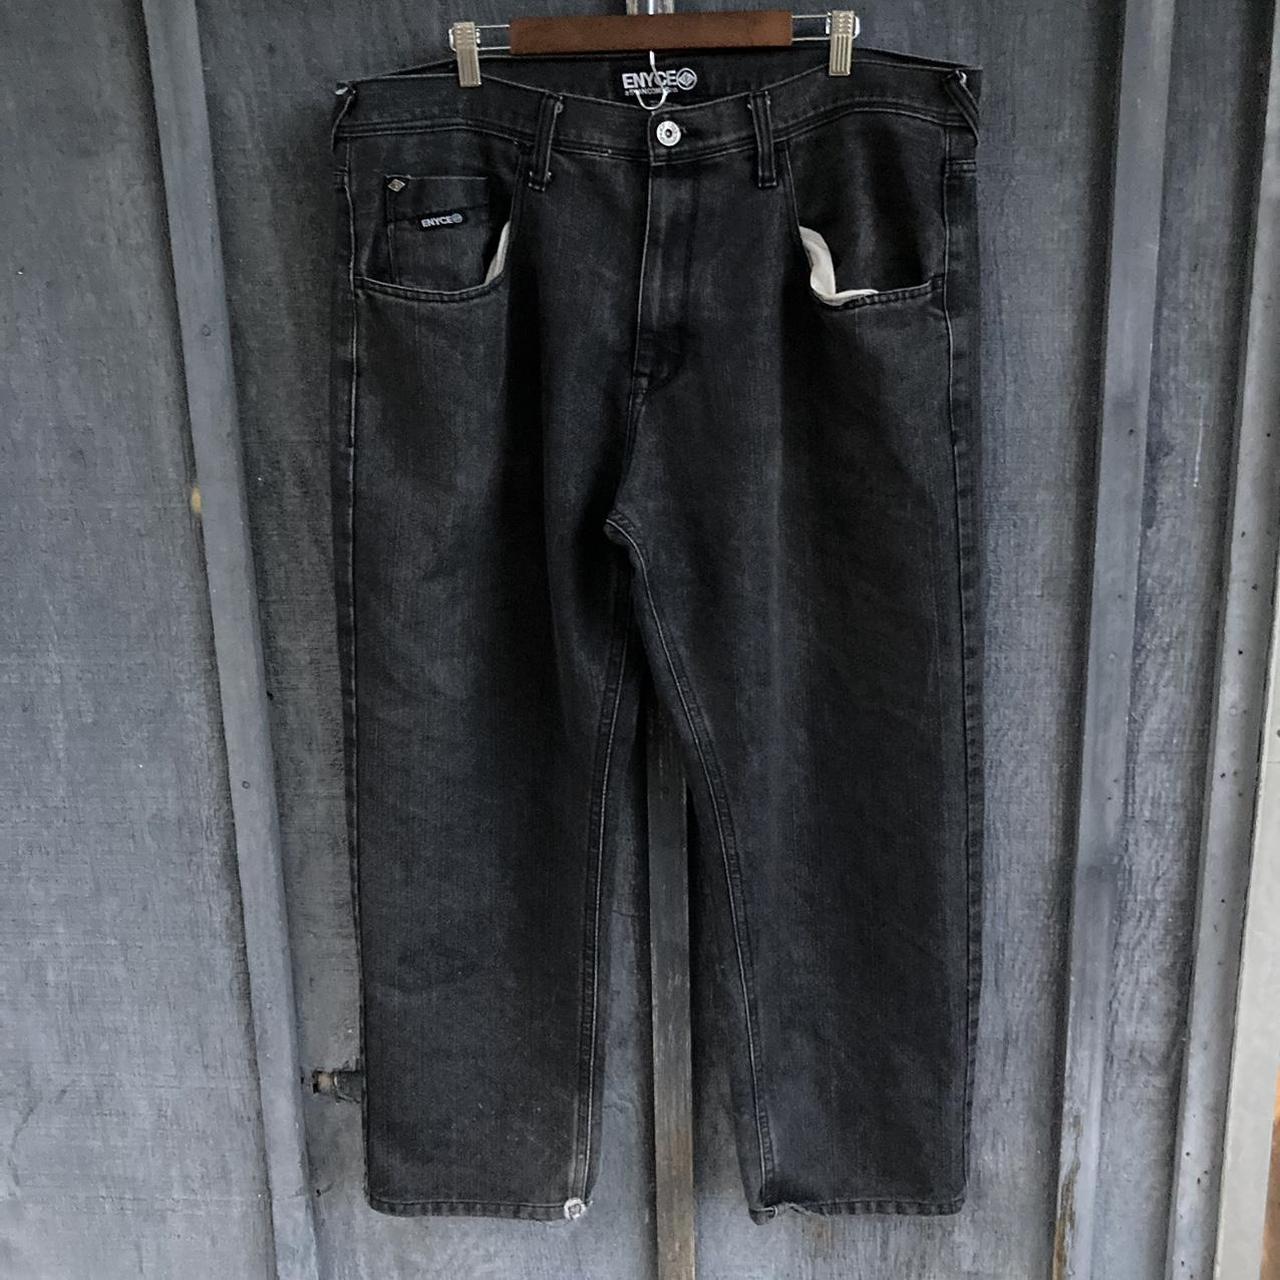 Cyber Y2k baggy enyce black jeans Size 44 waist... - Depop